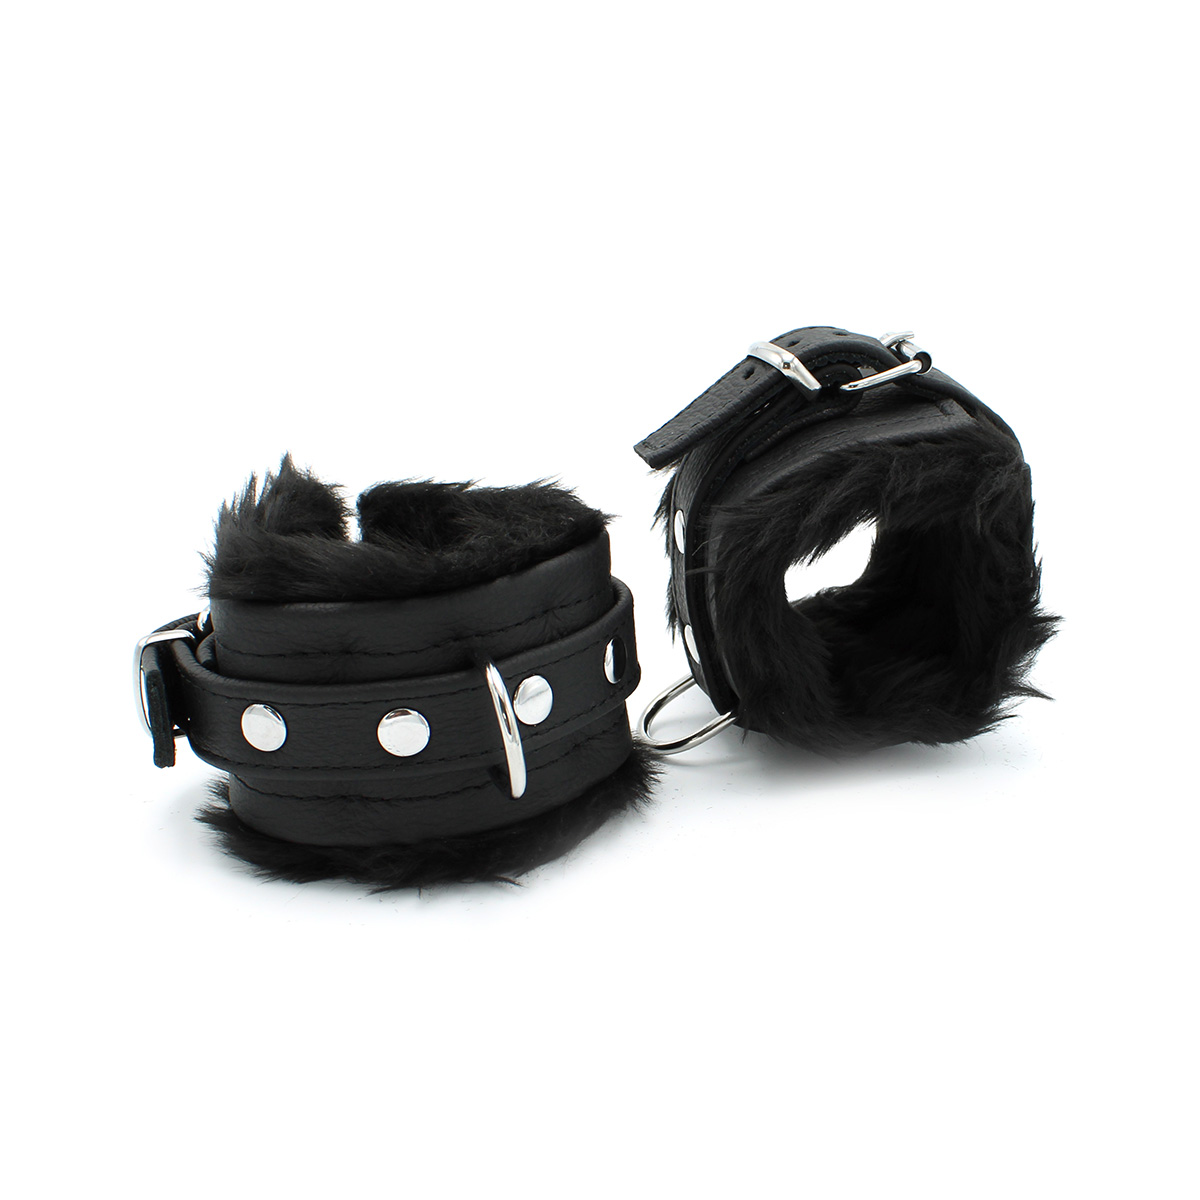 Fluffy-Inside-Black-Leather-Handcuffs-134-KIO-0344-1